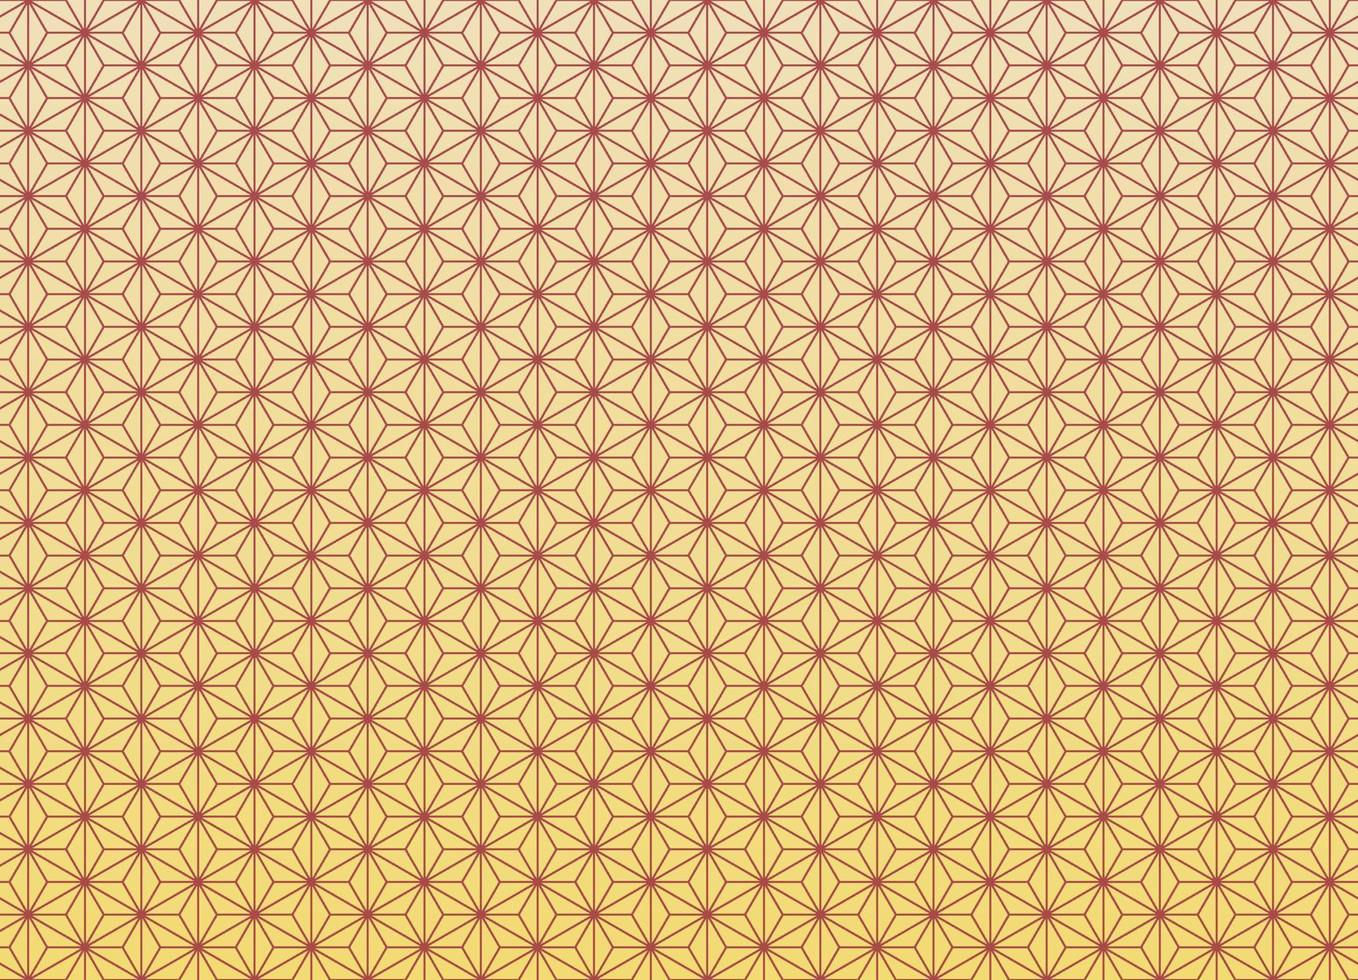 padrão sem costura tradicional japonês asanoha com fundo gradiente de cor ouro vermelho e amarelo. uso para tecido, têxtil, capa, embrulho, elementos de decoração. vetor